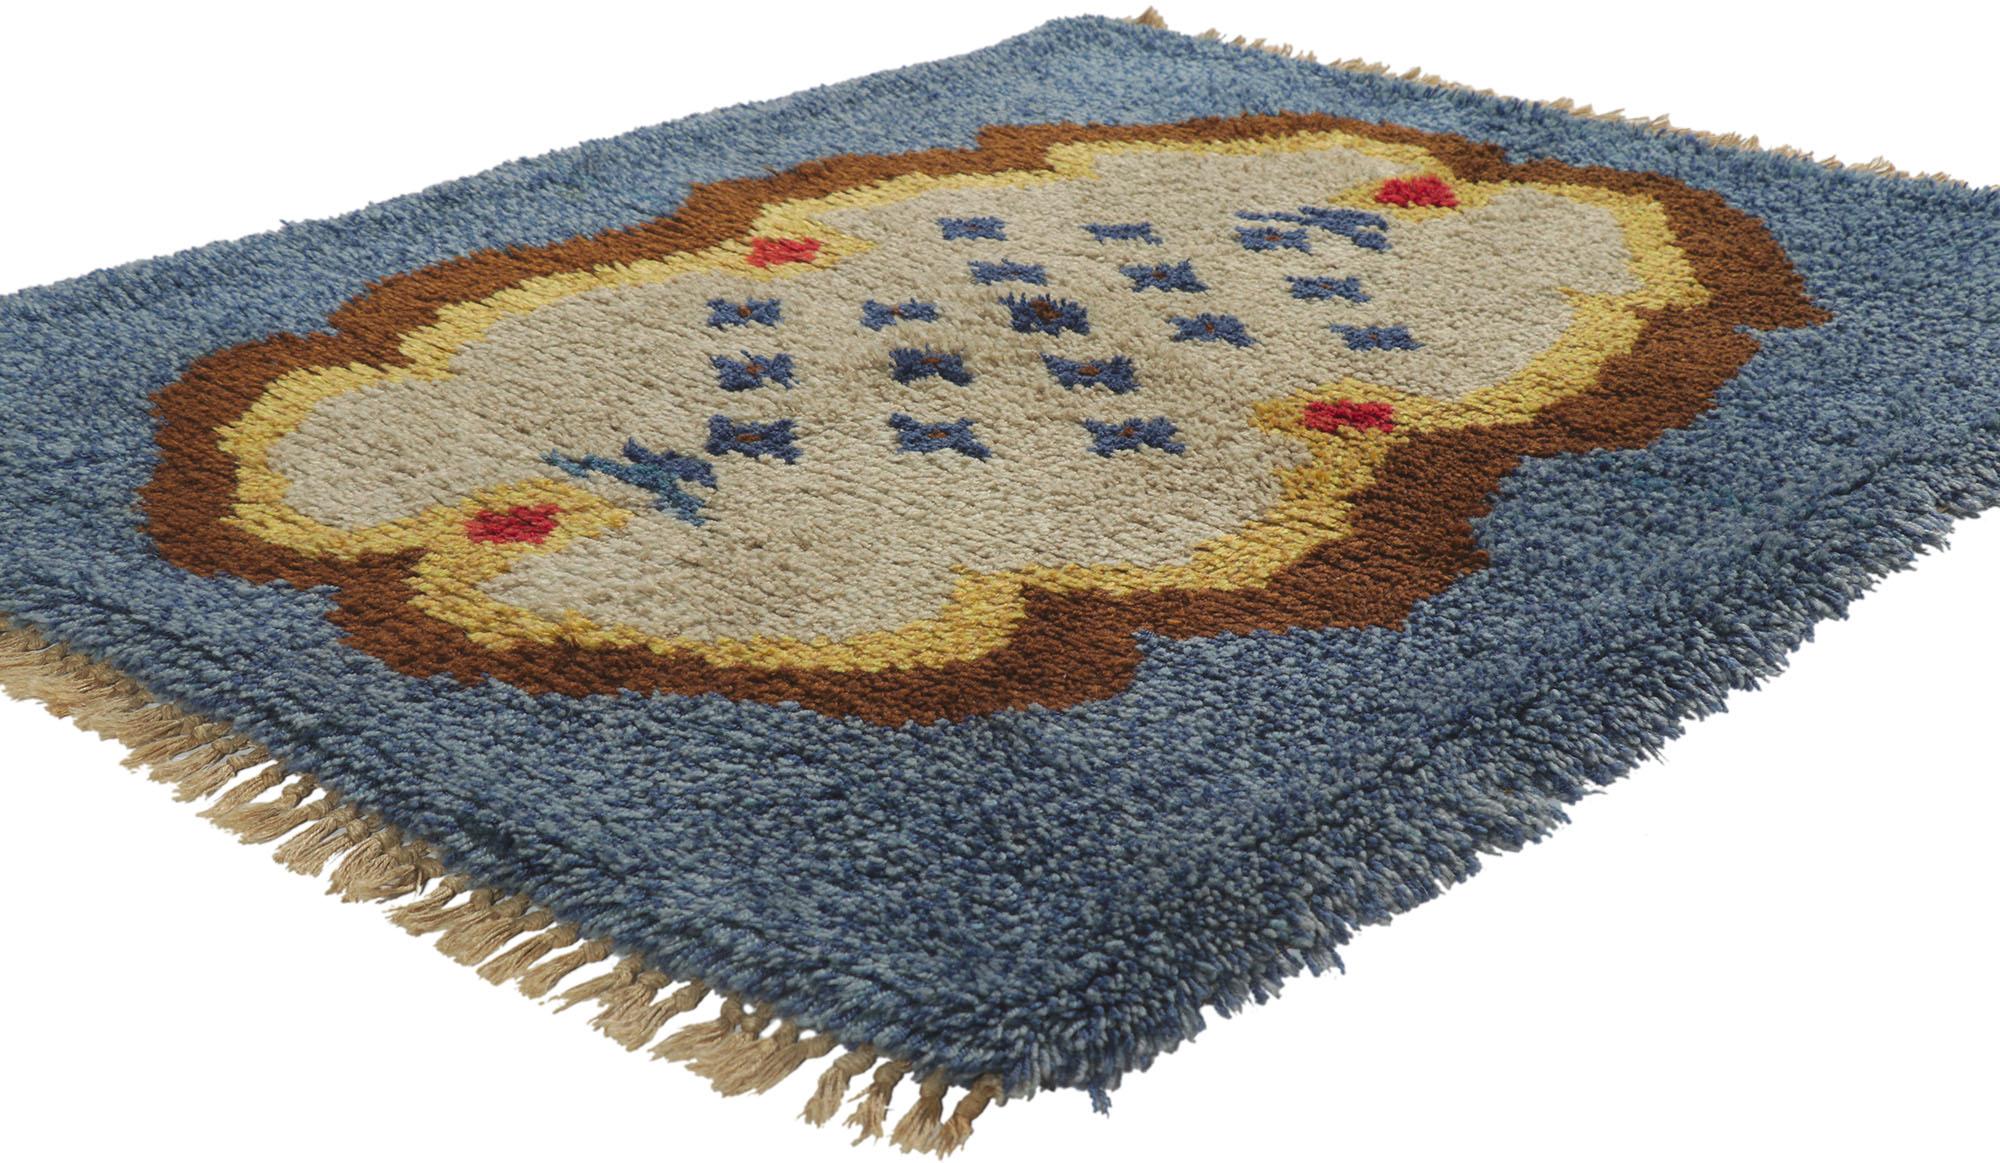 78276 Vieux tapis suédois Rya de style scandinave moderne 03'10 x 04'05. Plein de petits détails et d'un design expressif audacieux combiné à un style tribal d'art populaire, ce tapis Ryijy Rya suédois vintage en laine noué à la main est une vision